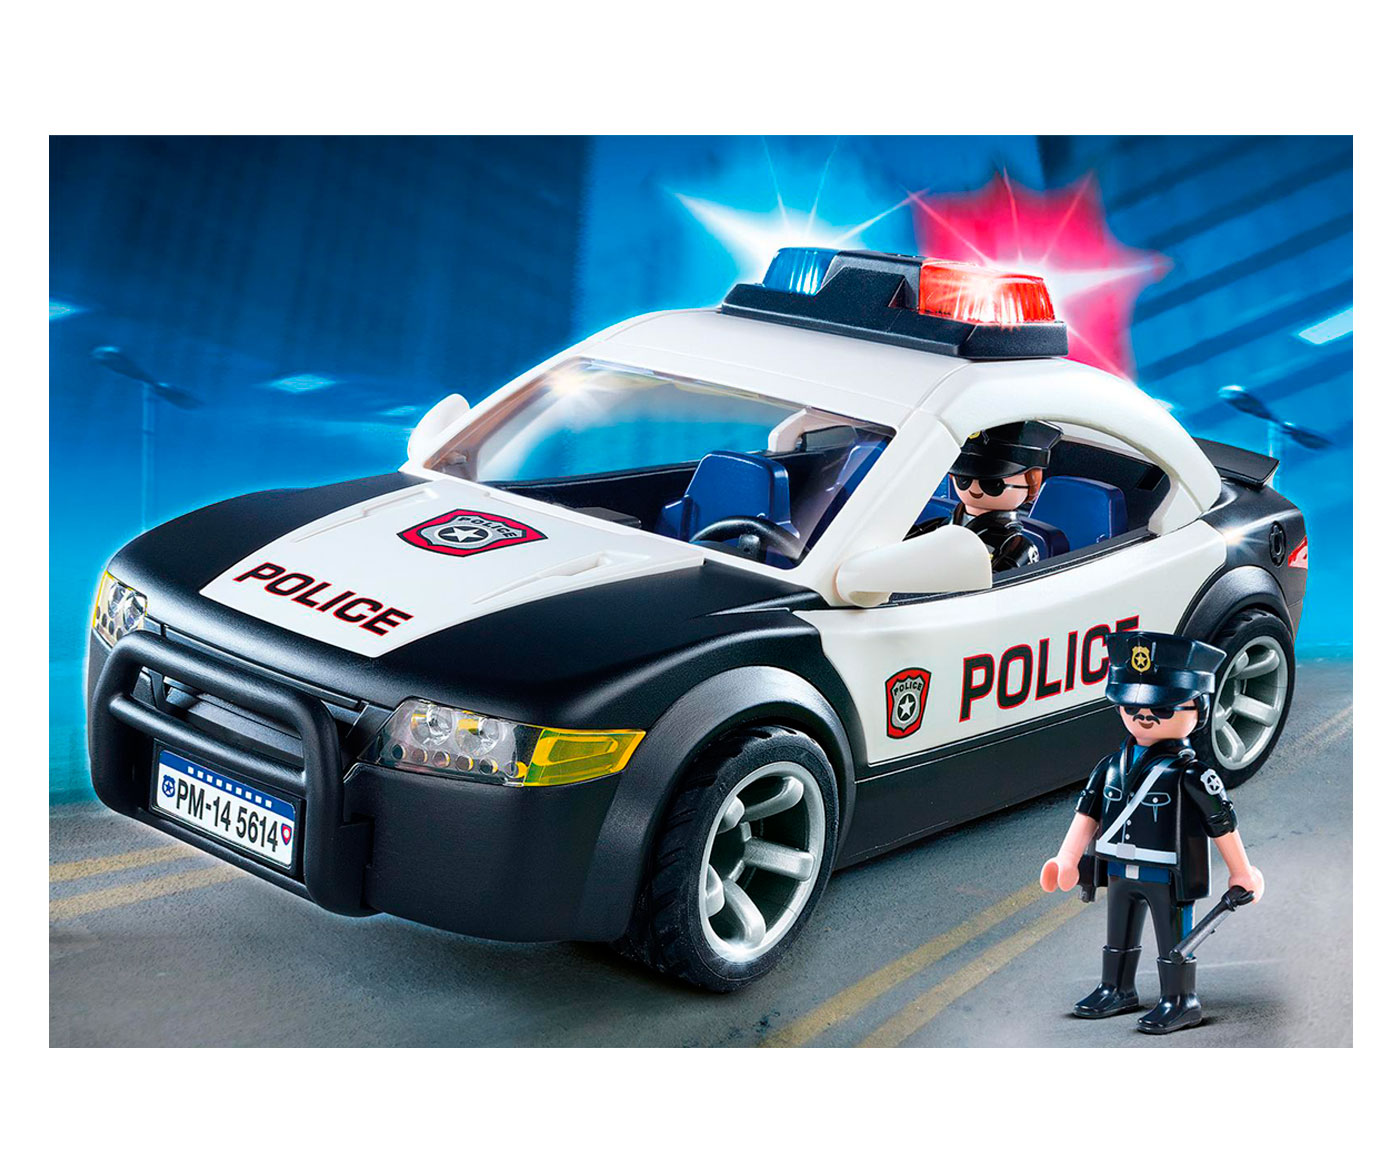 PLAYMOBIL CITY policía Cruiser 5673 CAR ACTION Totalmente Nuevo Sellado vendedor del Reino Unido! 